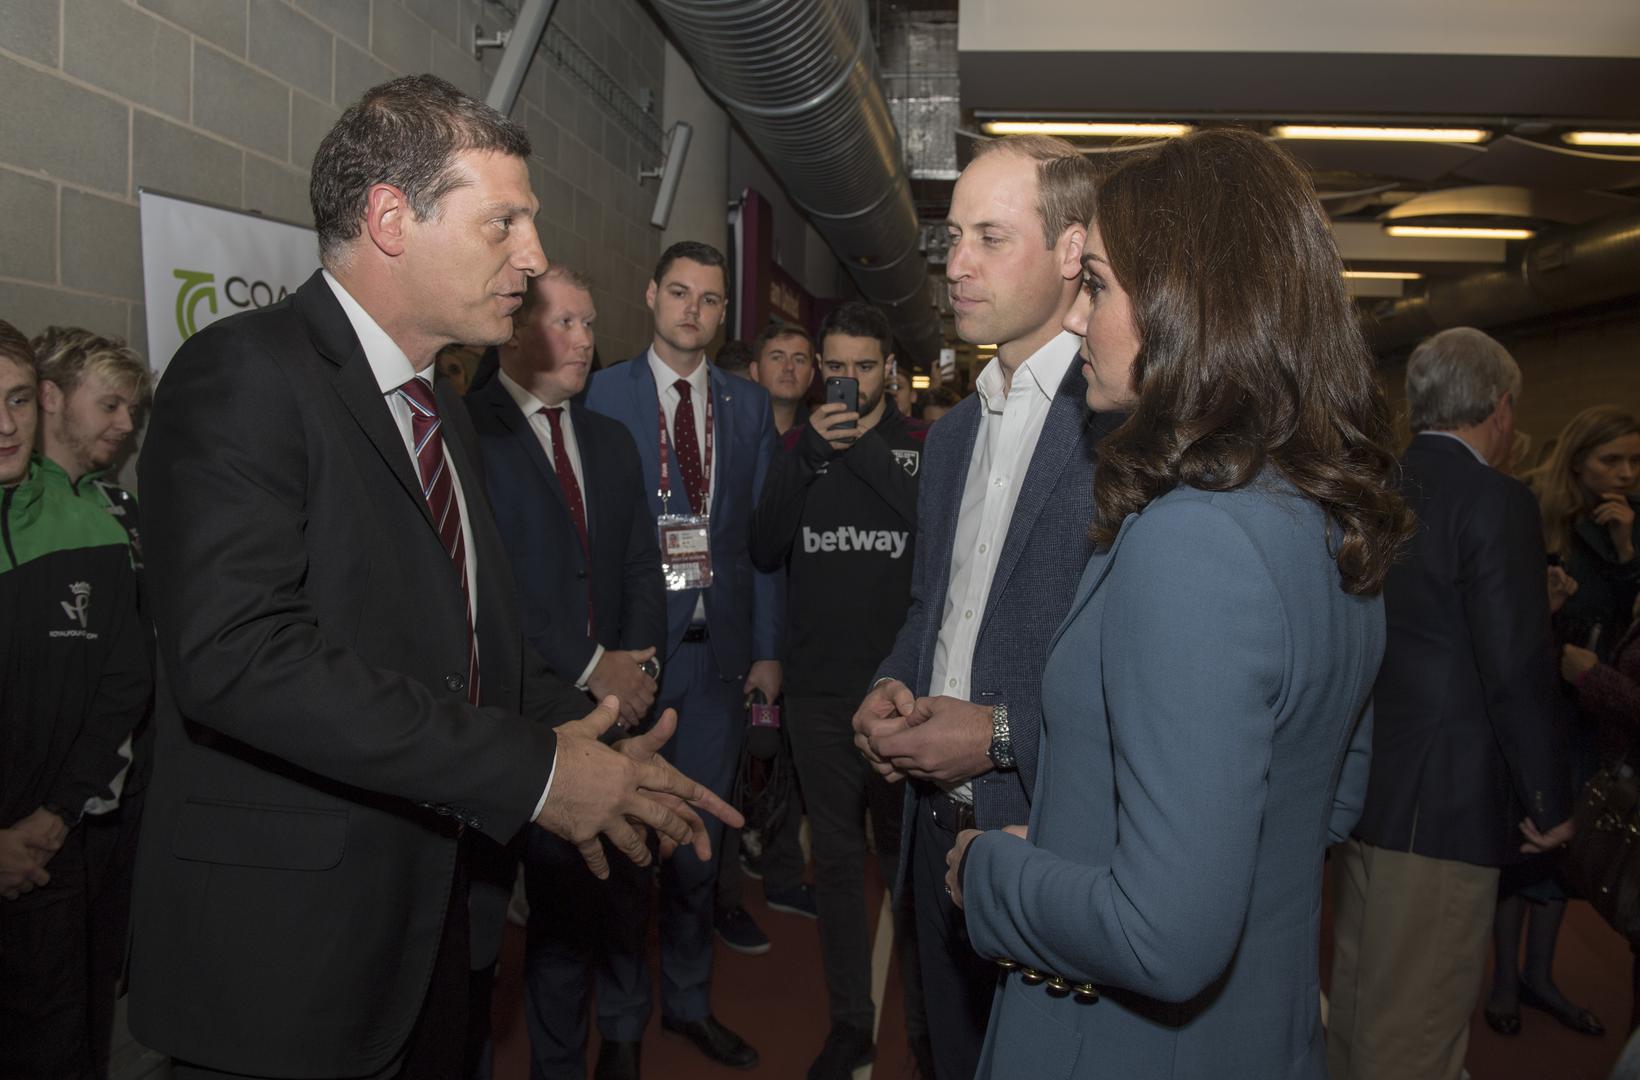 Trener West Hama Slaven Bilić susreo se s kraljevskim parom, princom Williamom i njegovom suprugom vojvotkinjom Catherine tijekom svečanosti predstavljanja trenerskih pripravnika na londonskom olimpijskom stadionu.